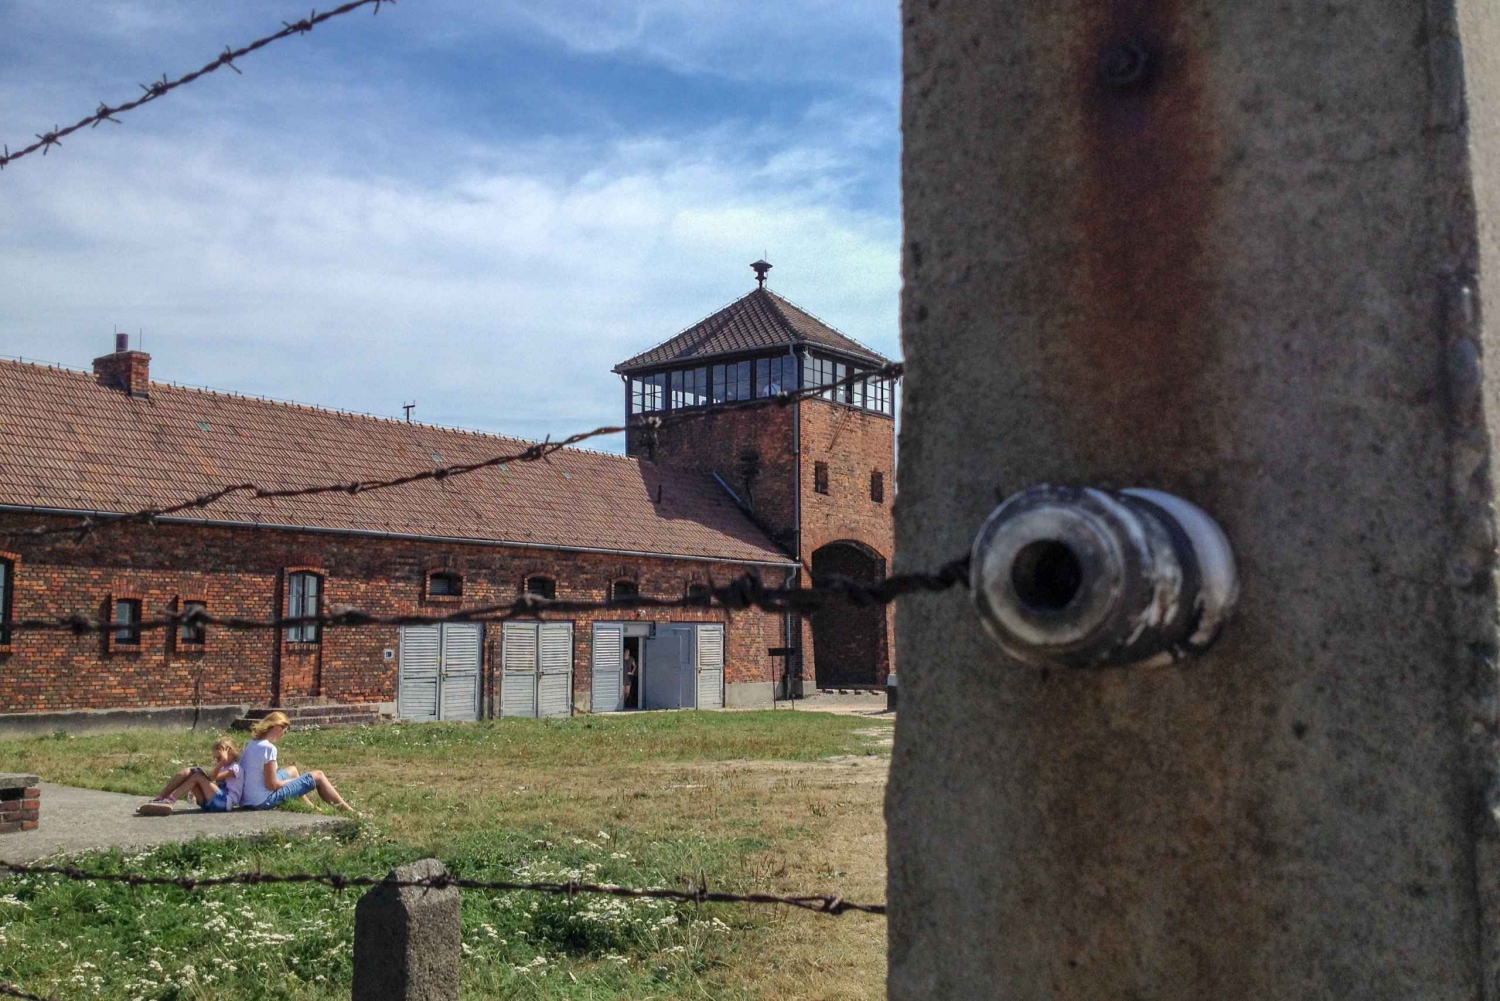 Kraków: Auschwitz and Birkenau Tour with Private Transport